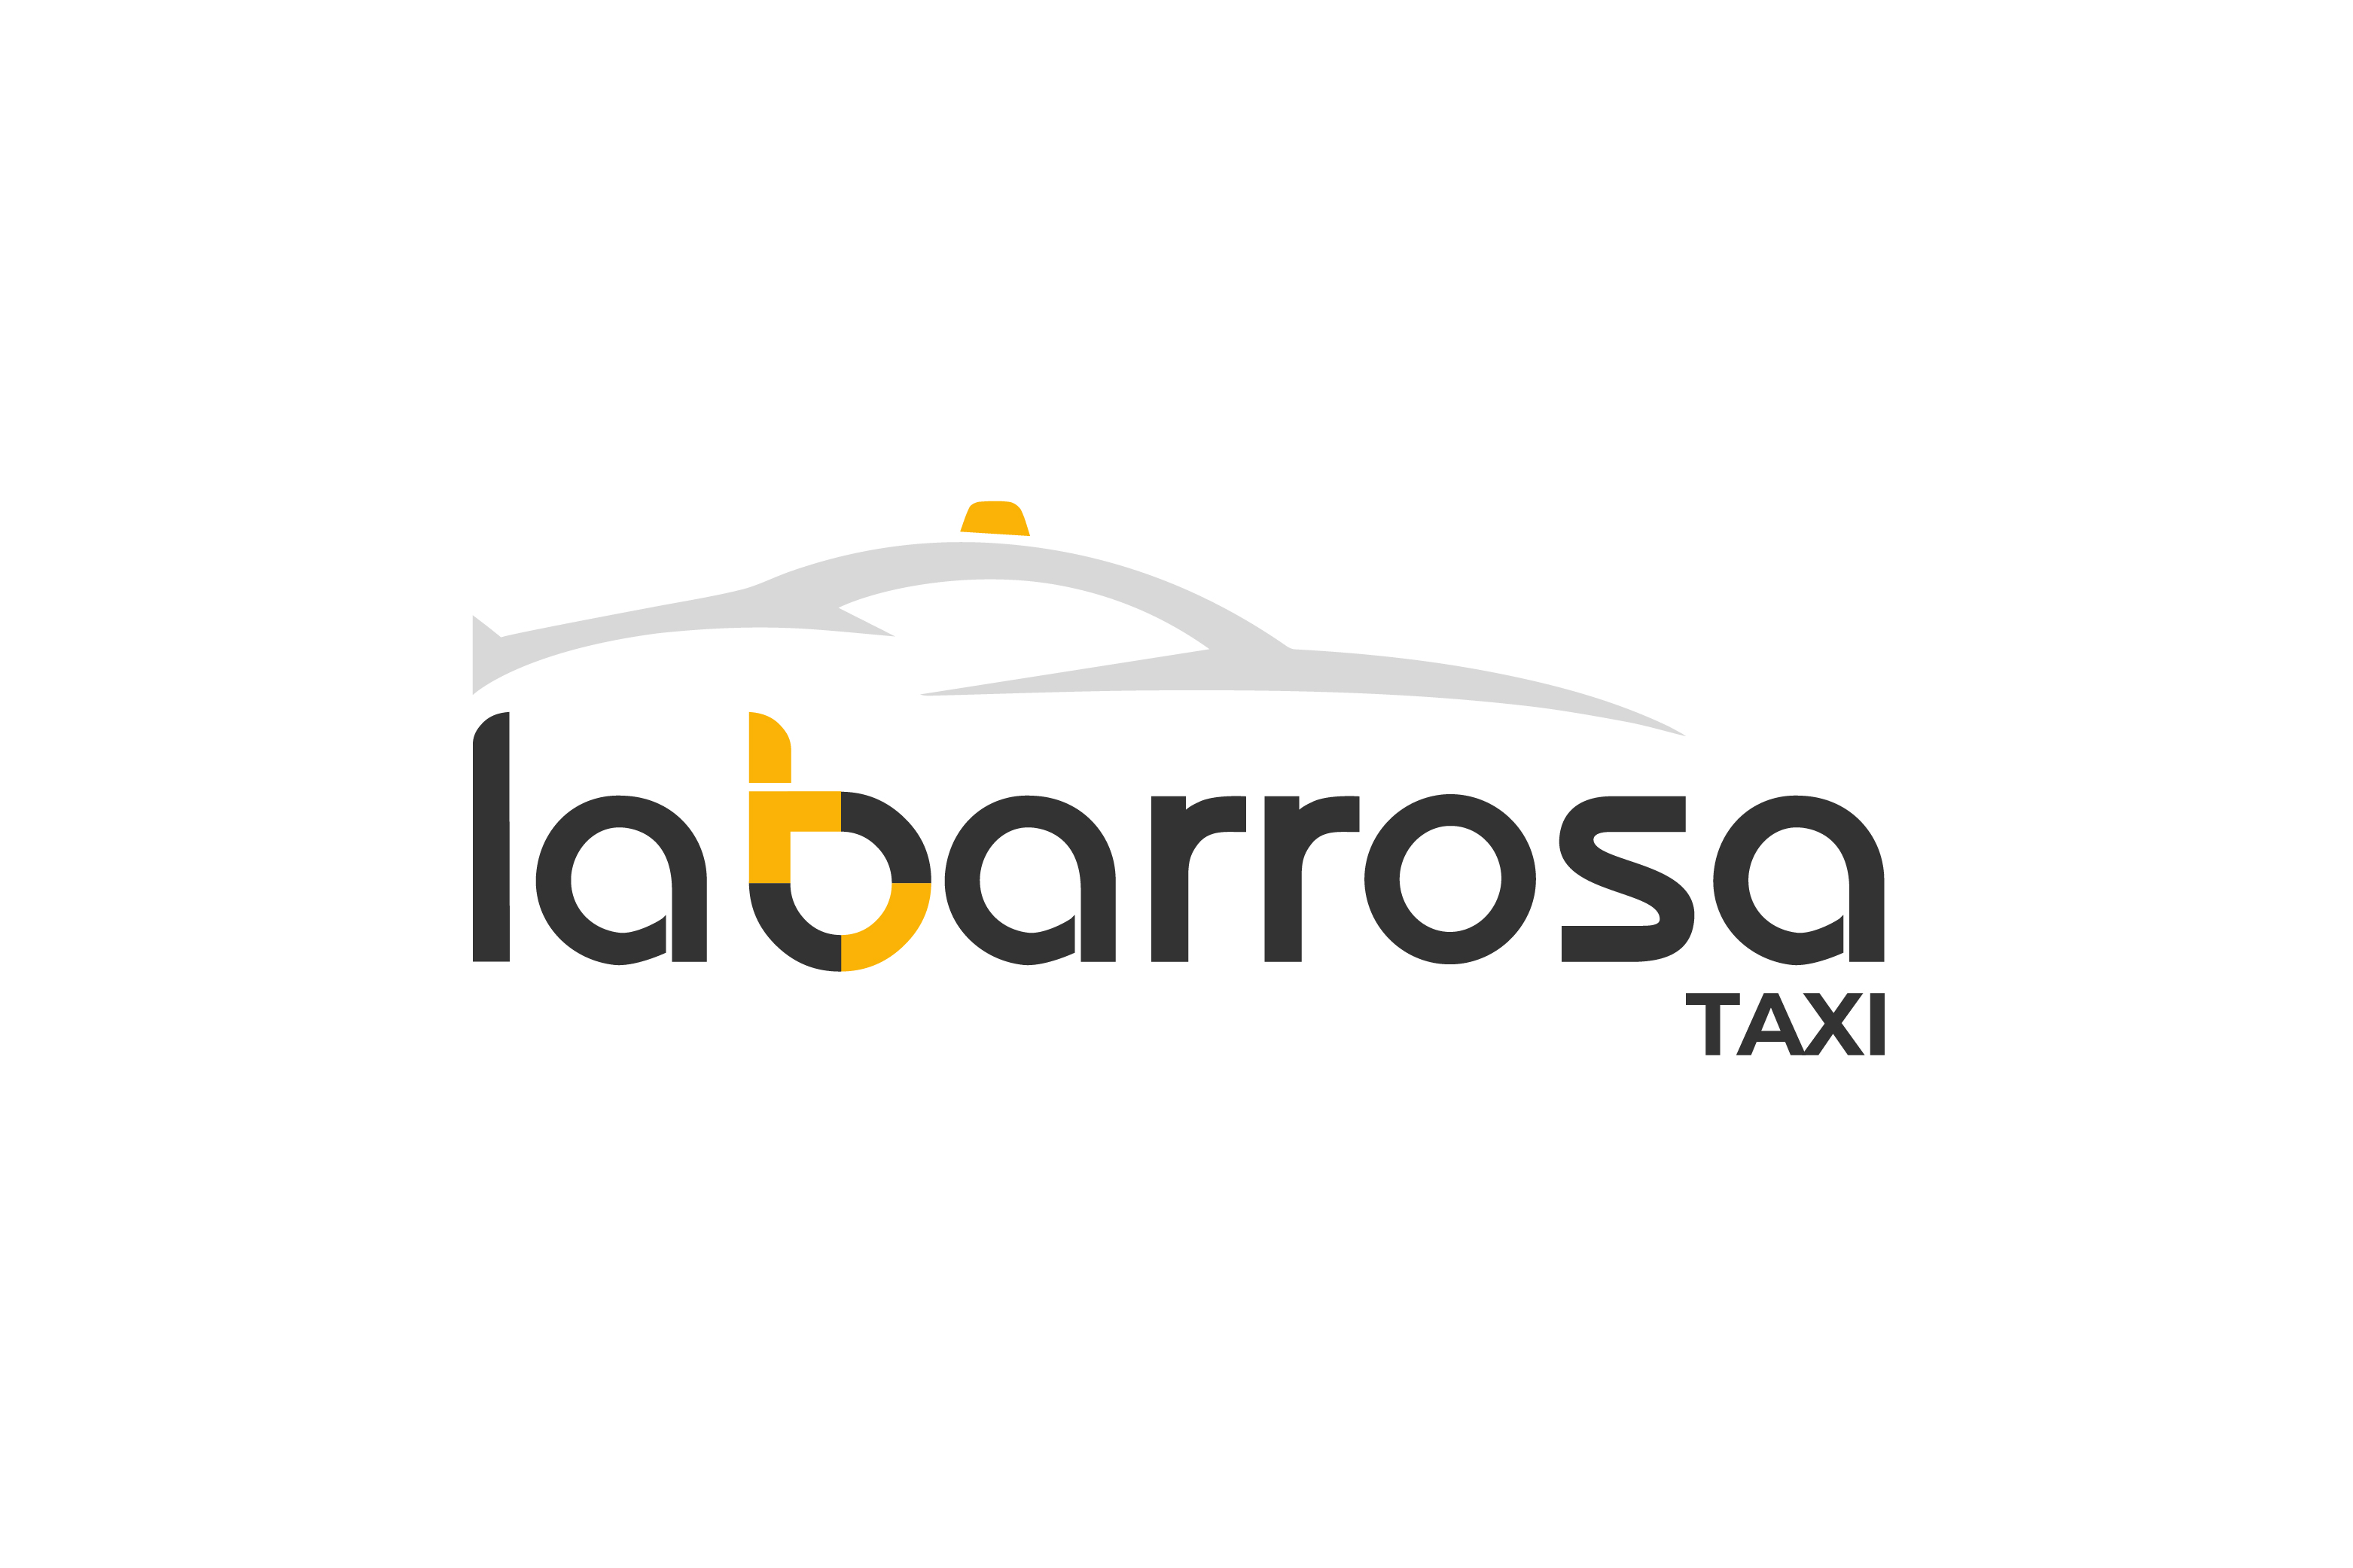 Taxi 24 Horas la Barrosa (Taxi la Barrosa)